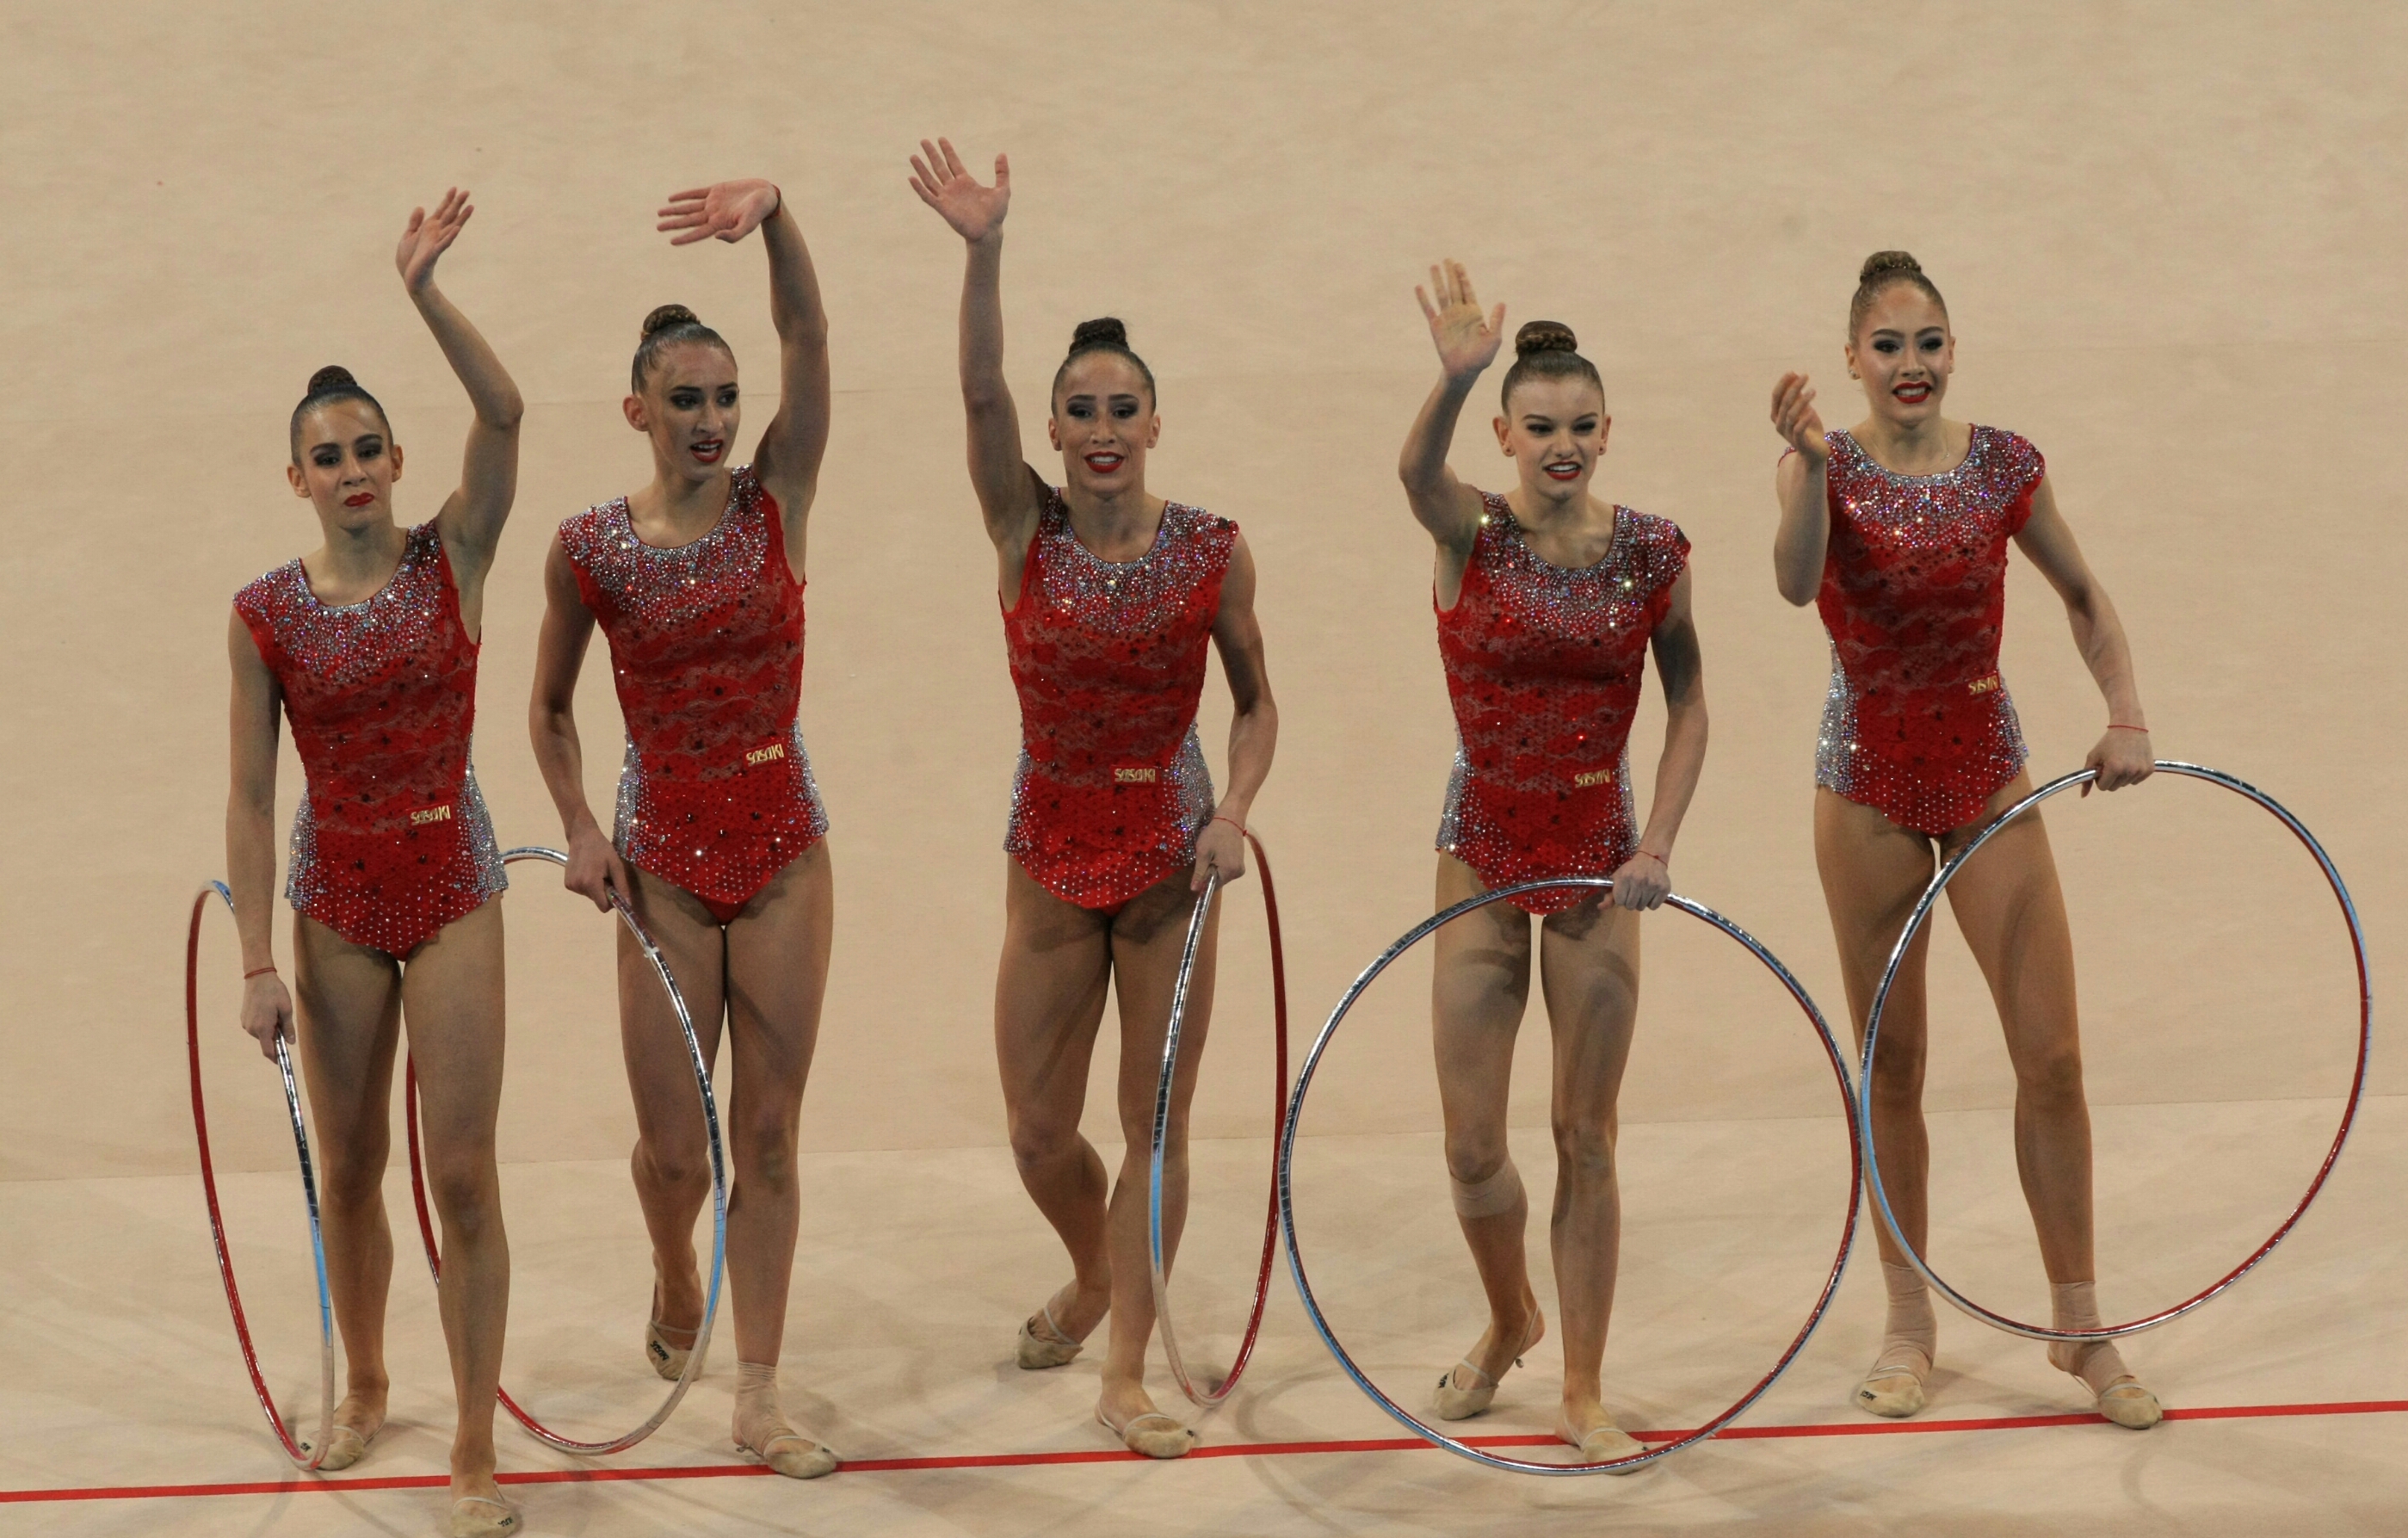 Националният ансамбъл по художествена гимнастика спечели златен медал във финала на пет обръча на Световната купа в София, след като отвя конкуренцията в дисциплината в зала "Арена Армеец".